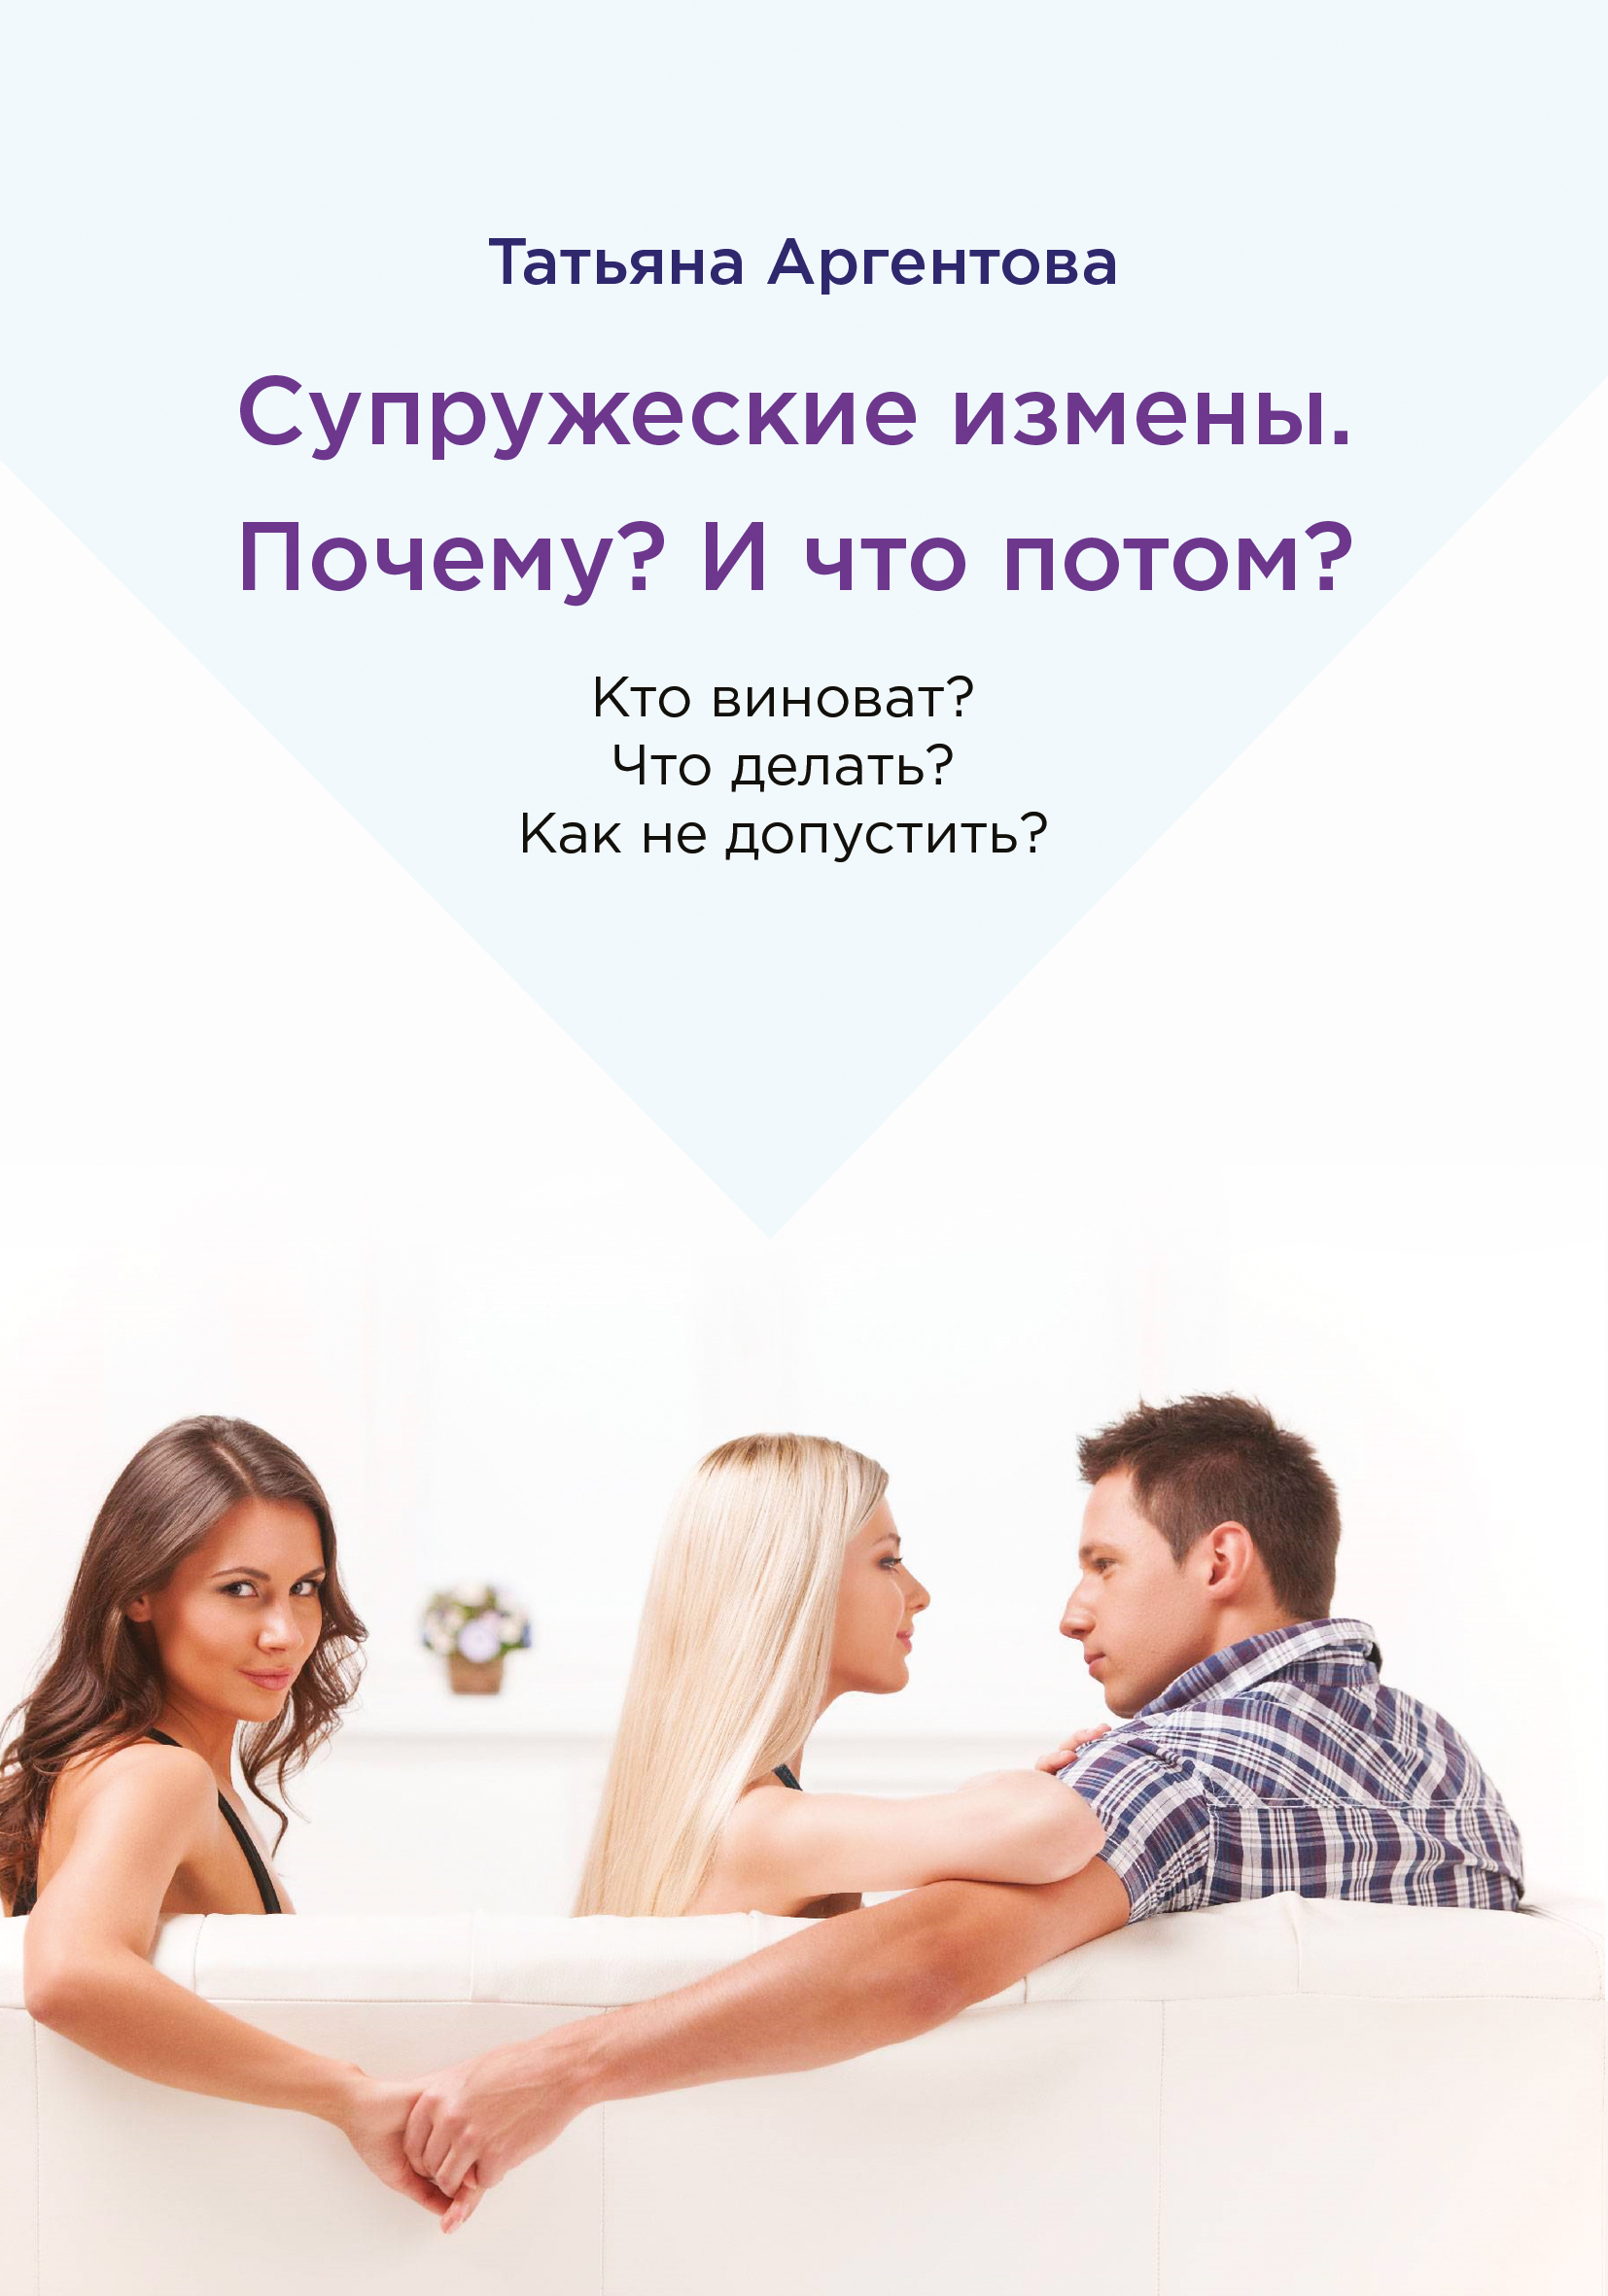 Закон о супружеской измене в россии